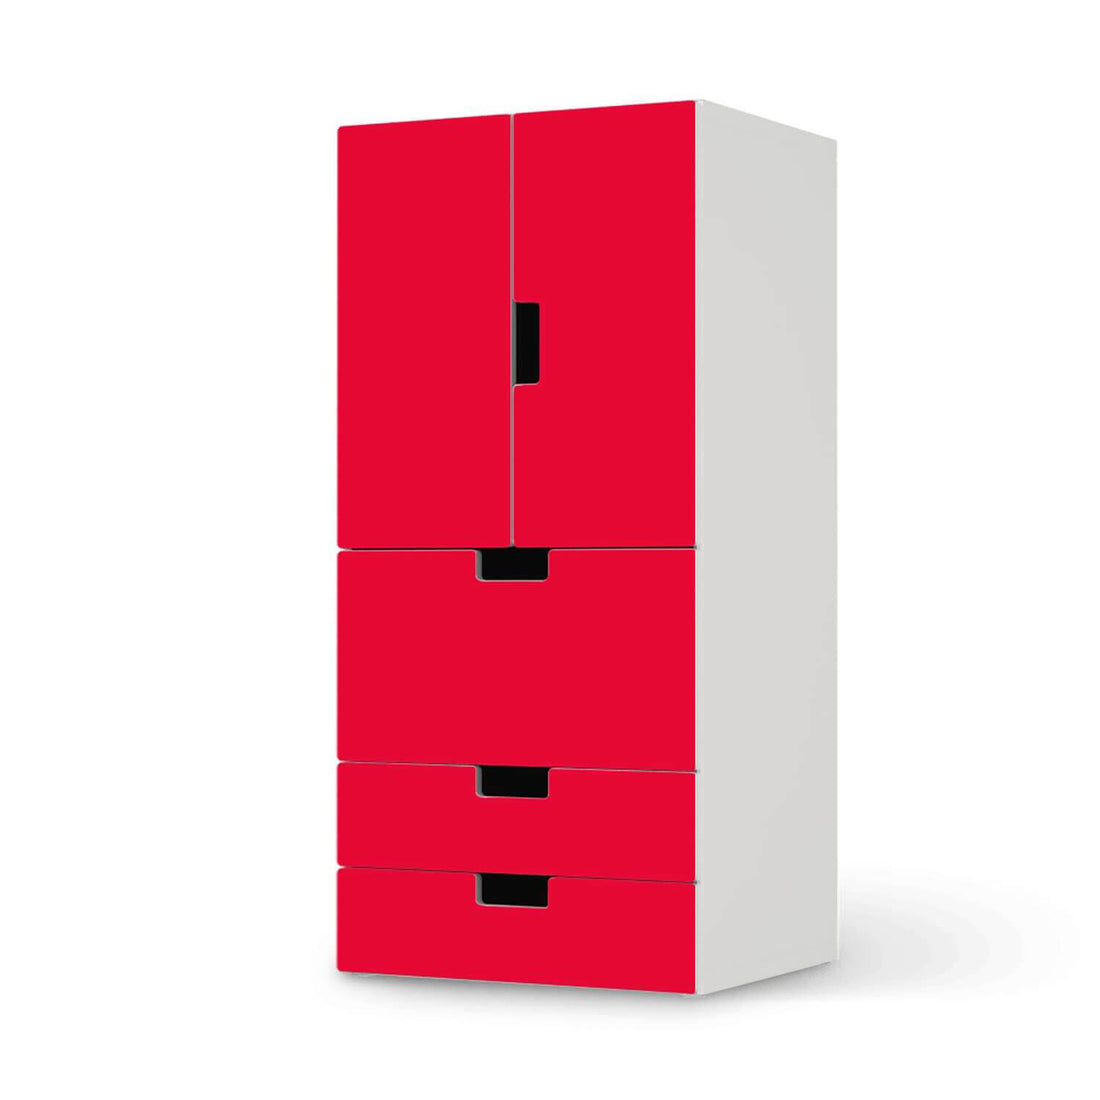 Möbelfolie Rot Light - IKEA Stuva kombiniert - 3 Schubladen und 2 kleine Türen  - weiss